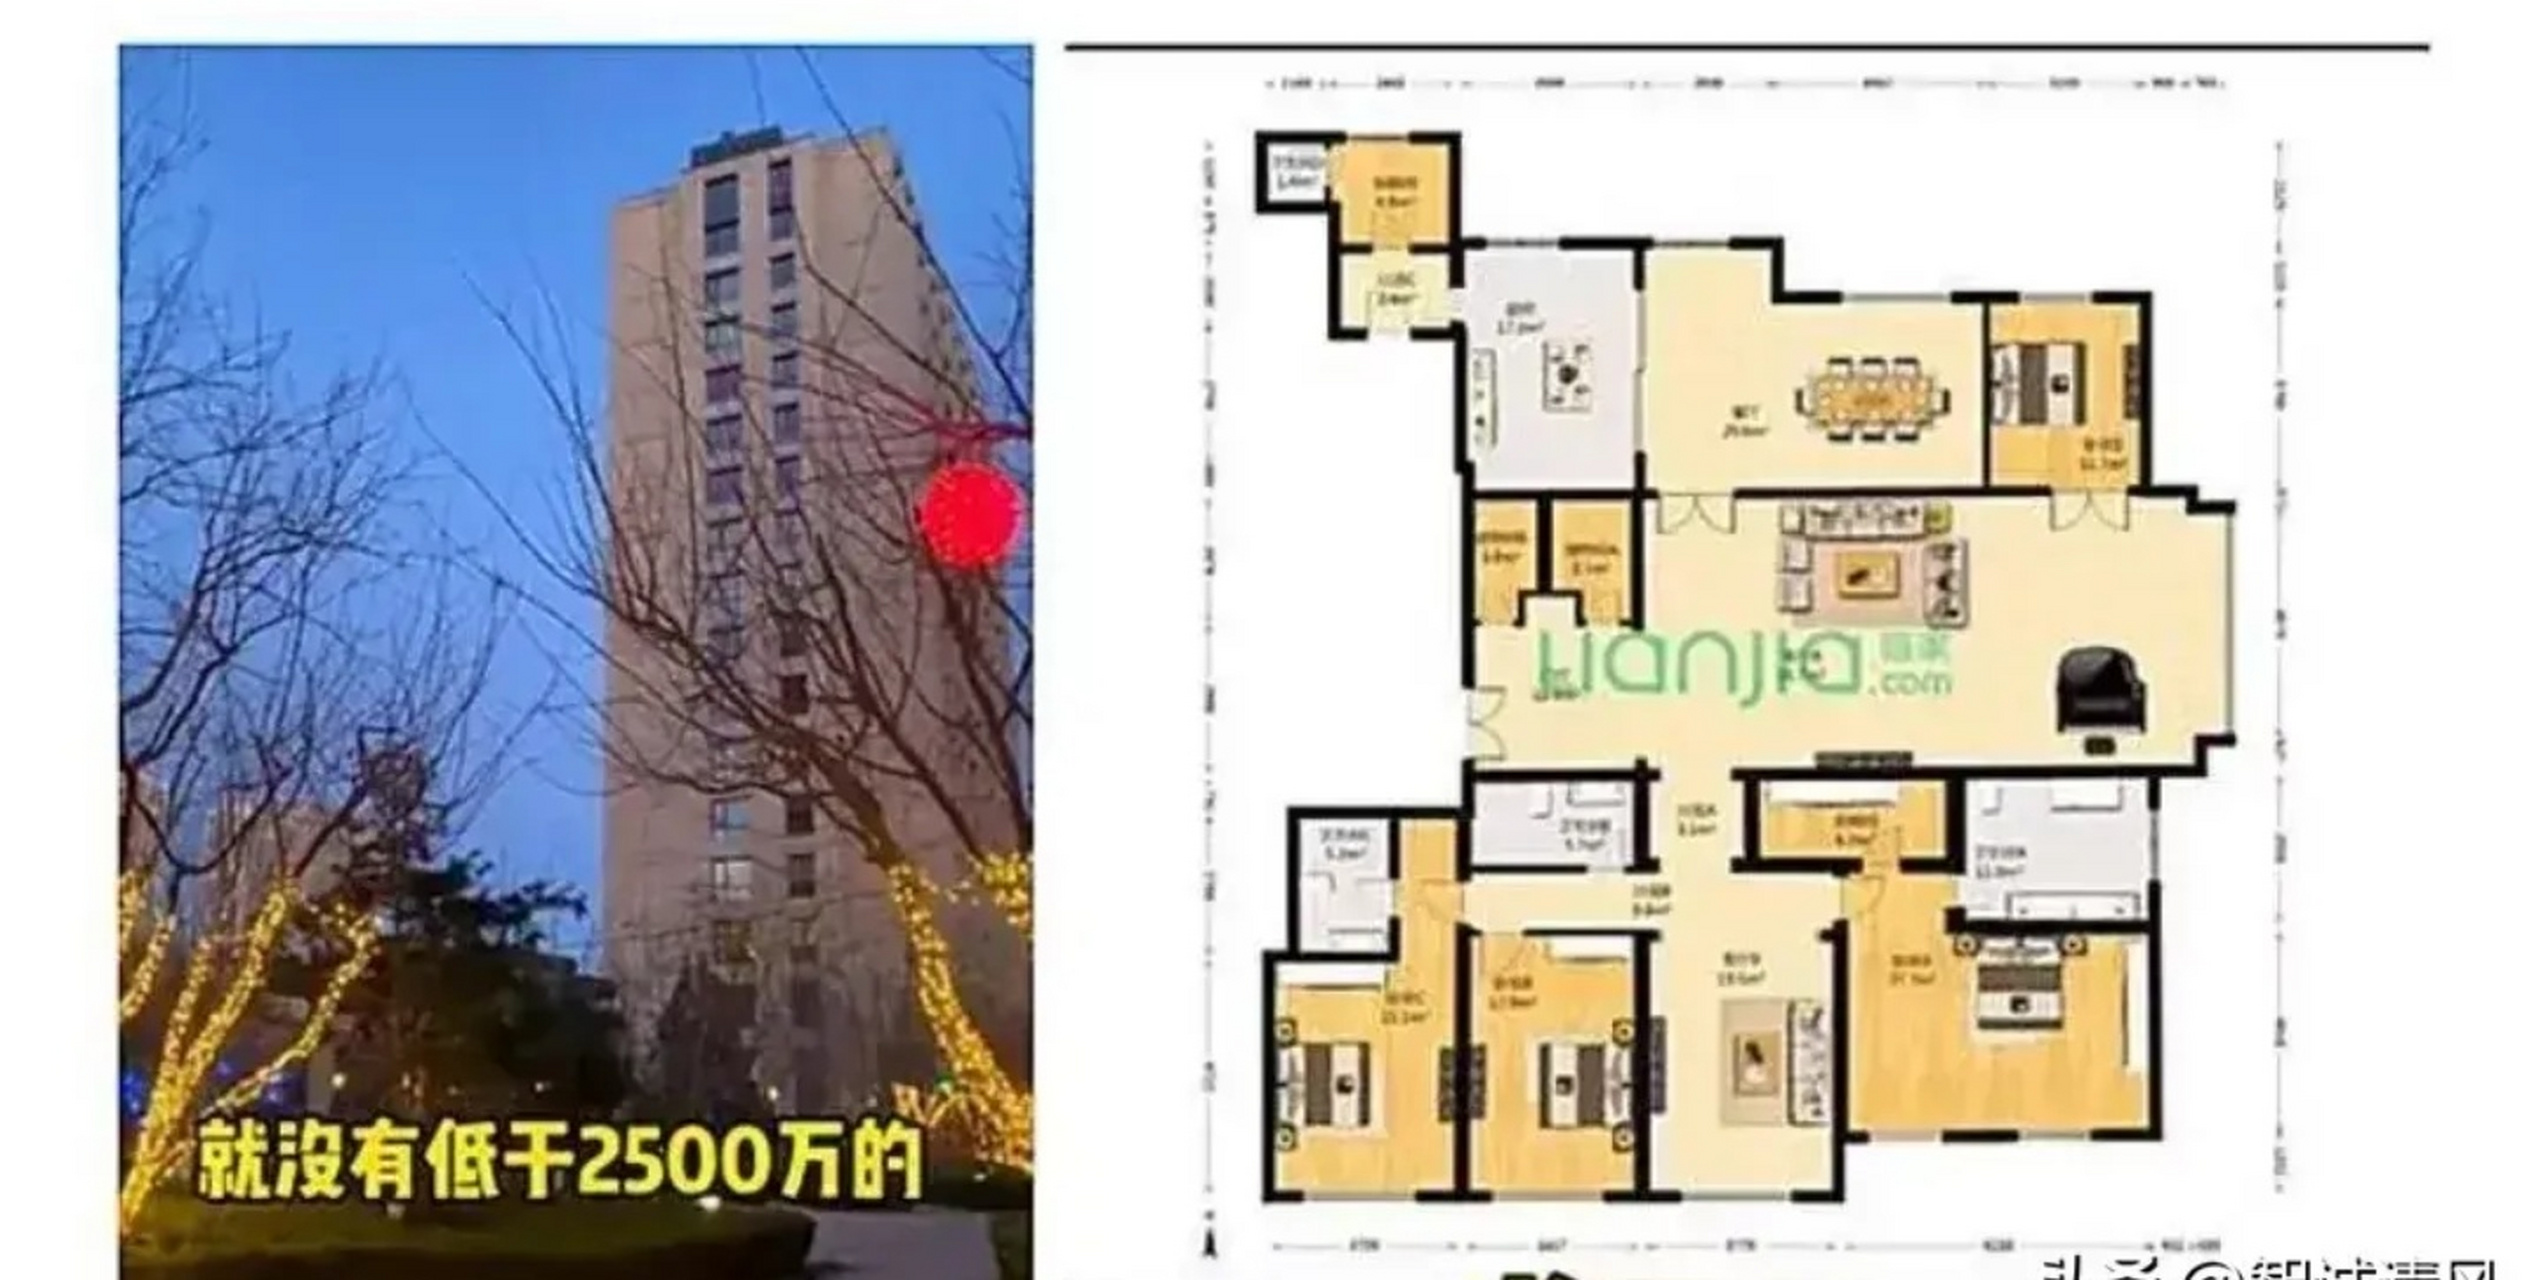 李易峰北京豪宅位于北京的富人区,这里的业主可以说是非富即贵,房价